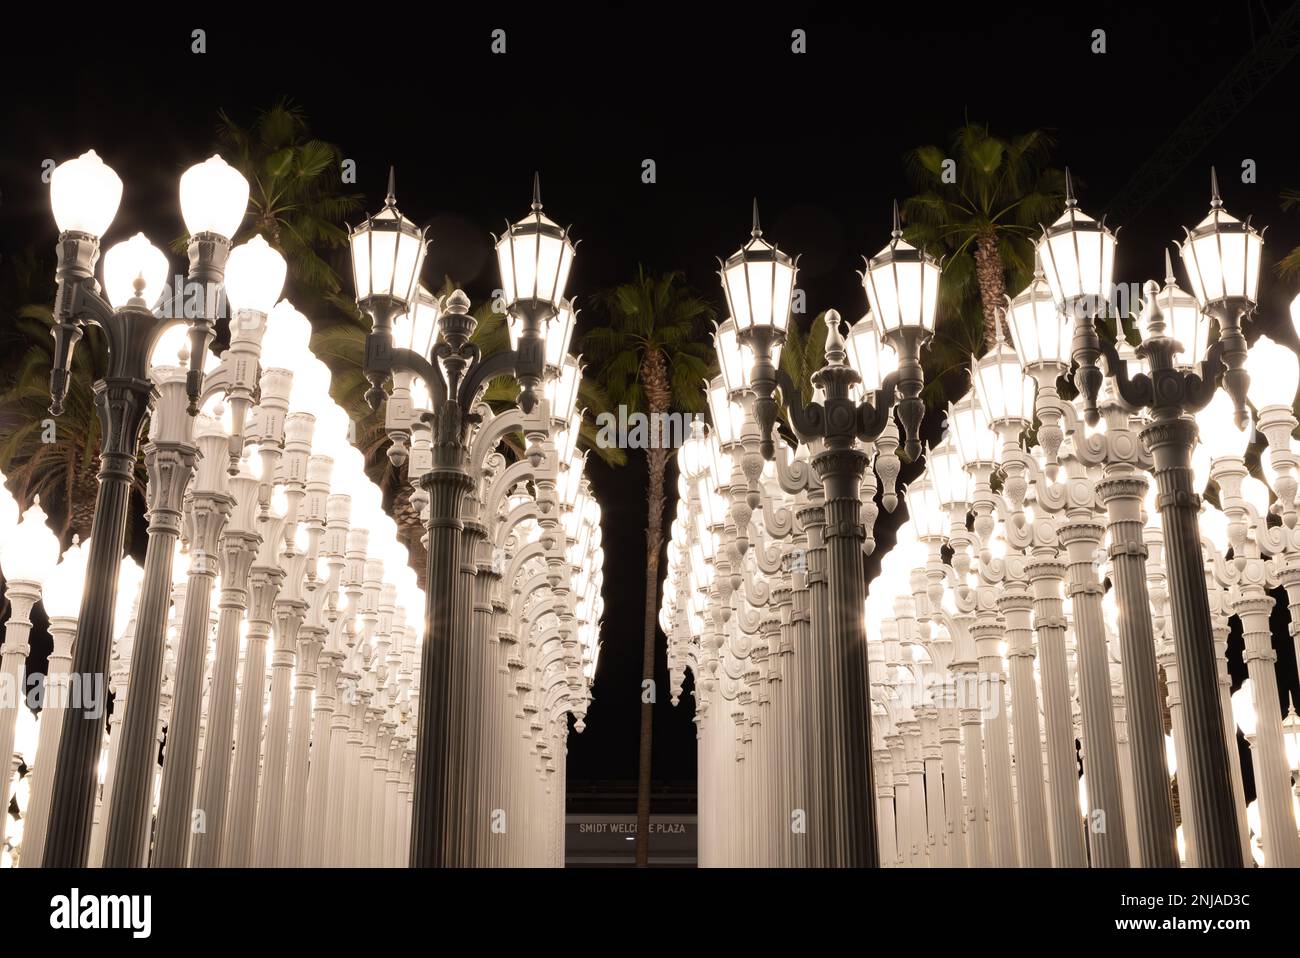 Una foto di Urban Light, un'arte pubblica progettata da Chris Burden e presentata nel 2008, accanto al Los Angeles County Museum of Art, di notte. Foto Stock